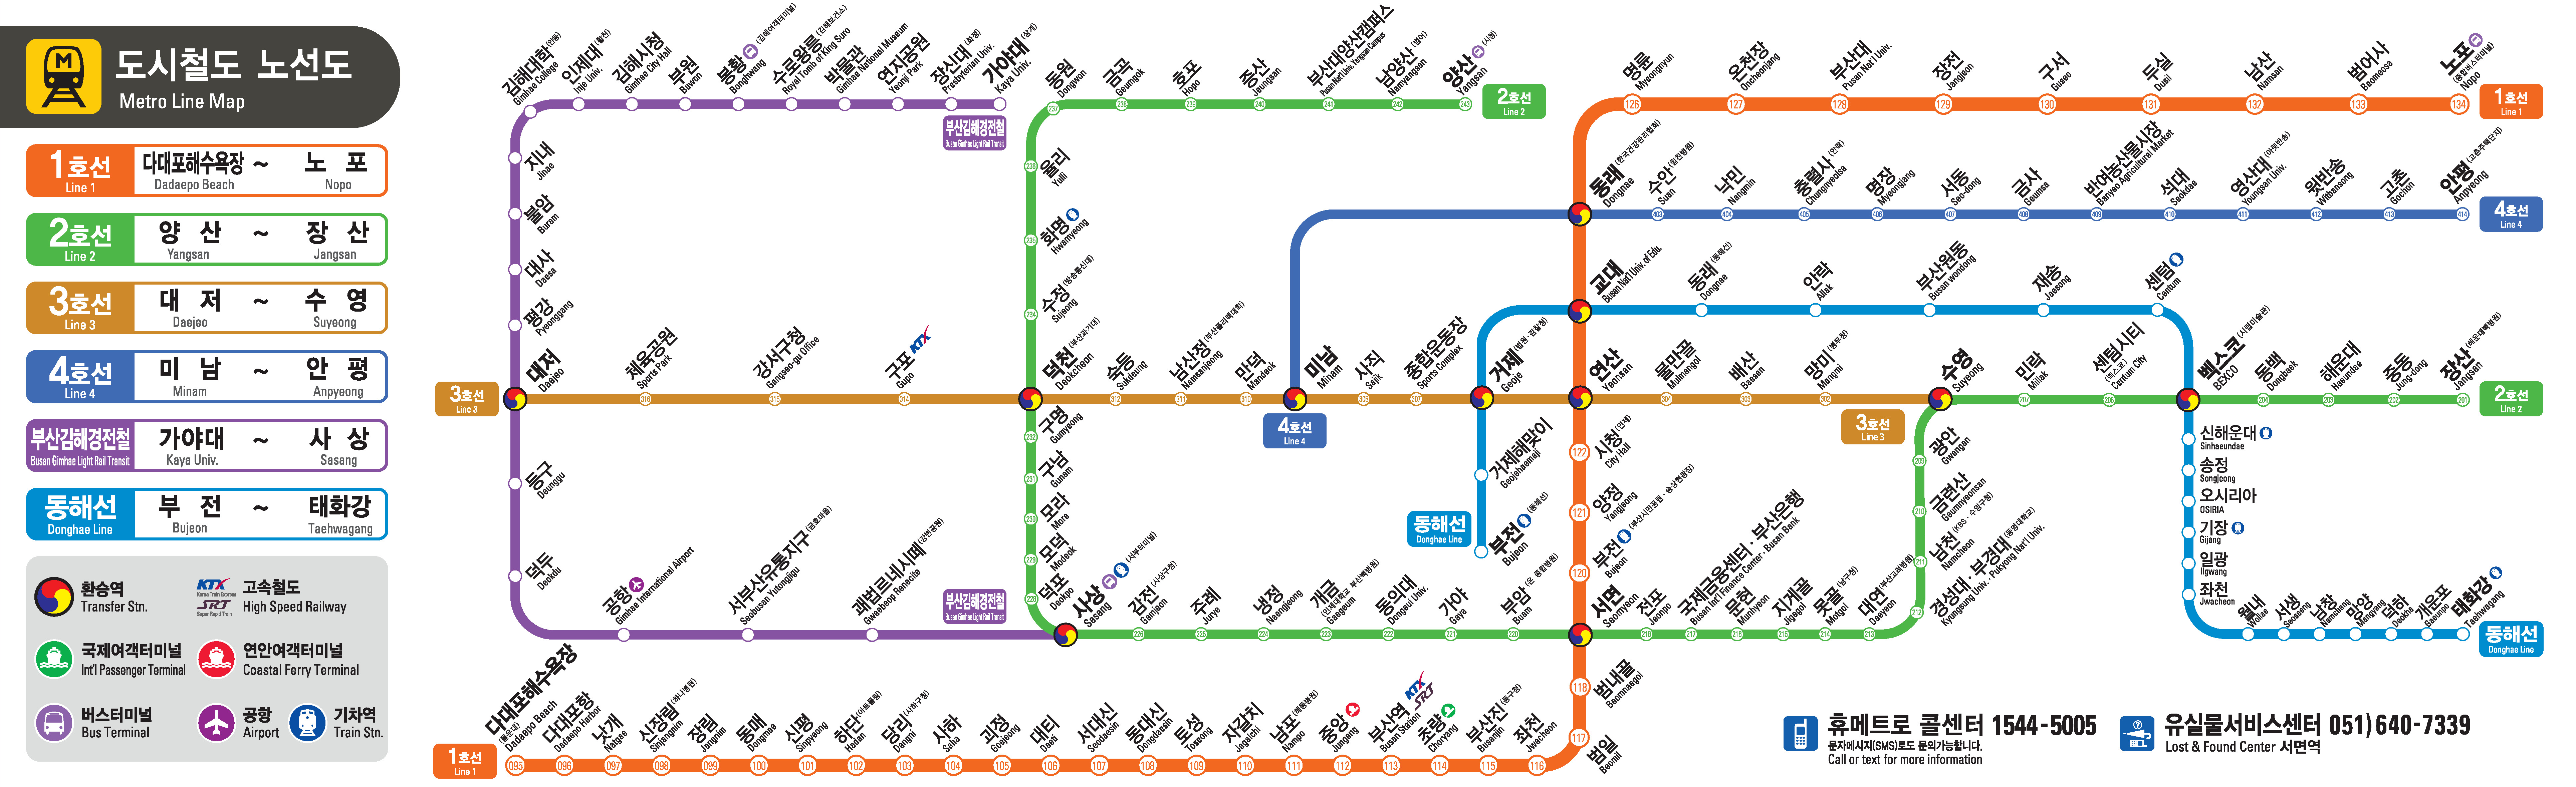 부산도시철도노선도-해운대구 내의 도시철도역은 센텀시티, 시립미술관, 해운대, 중동, 동백, 장산역이 있습니다.(자세한 사항은 부산교통공사 홈페이지 참고)